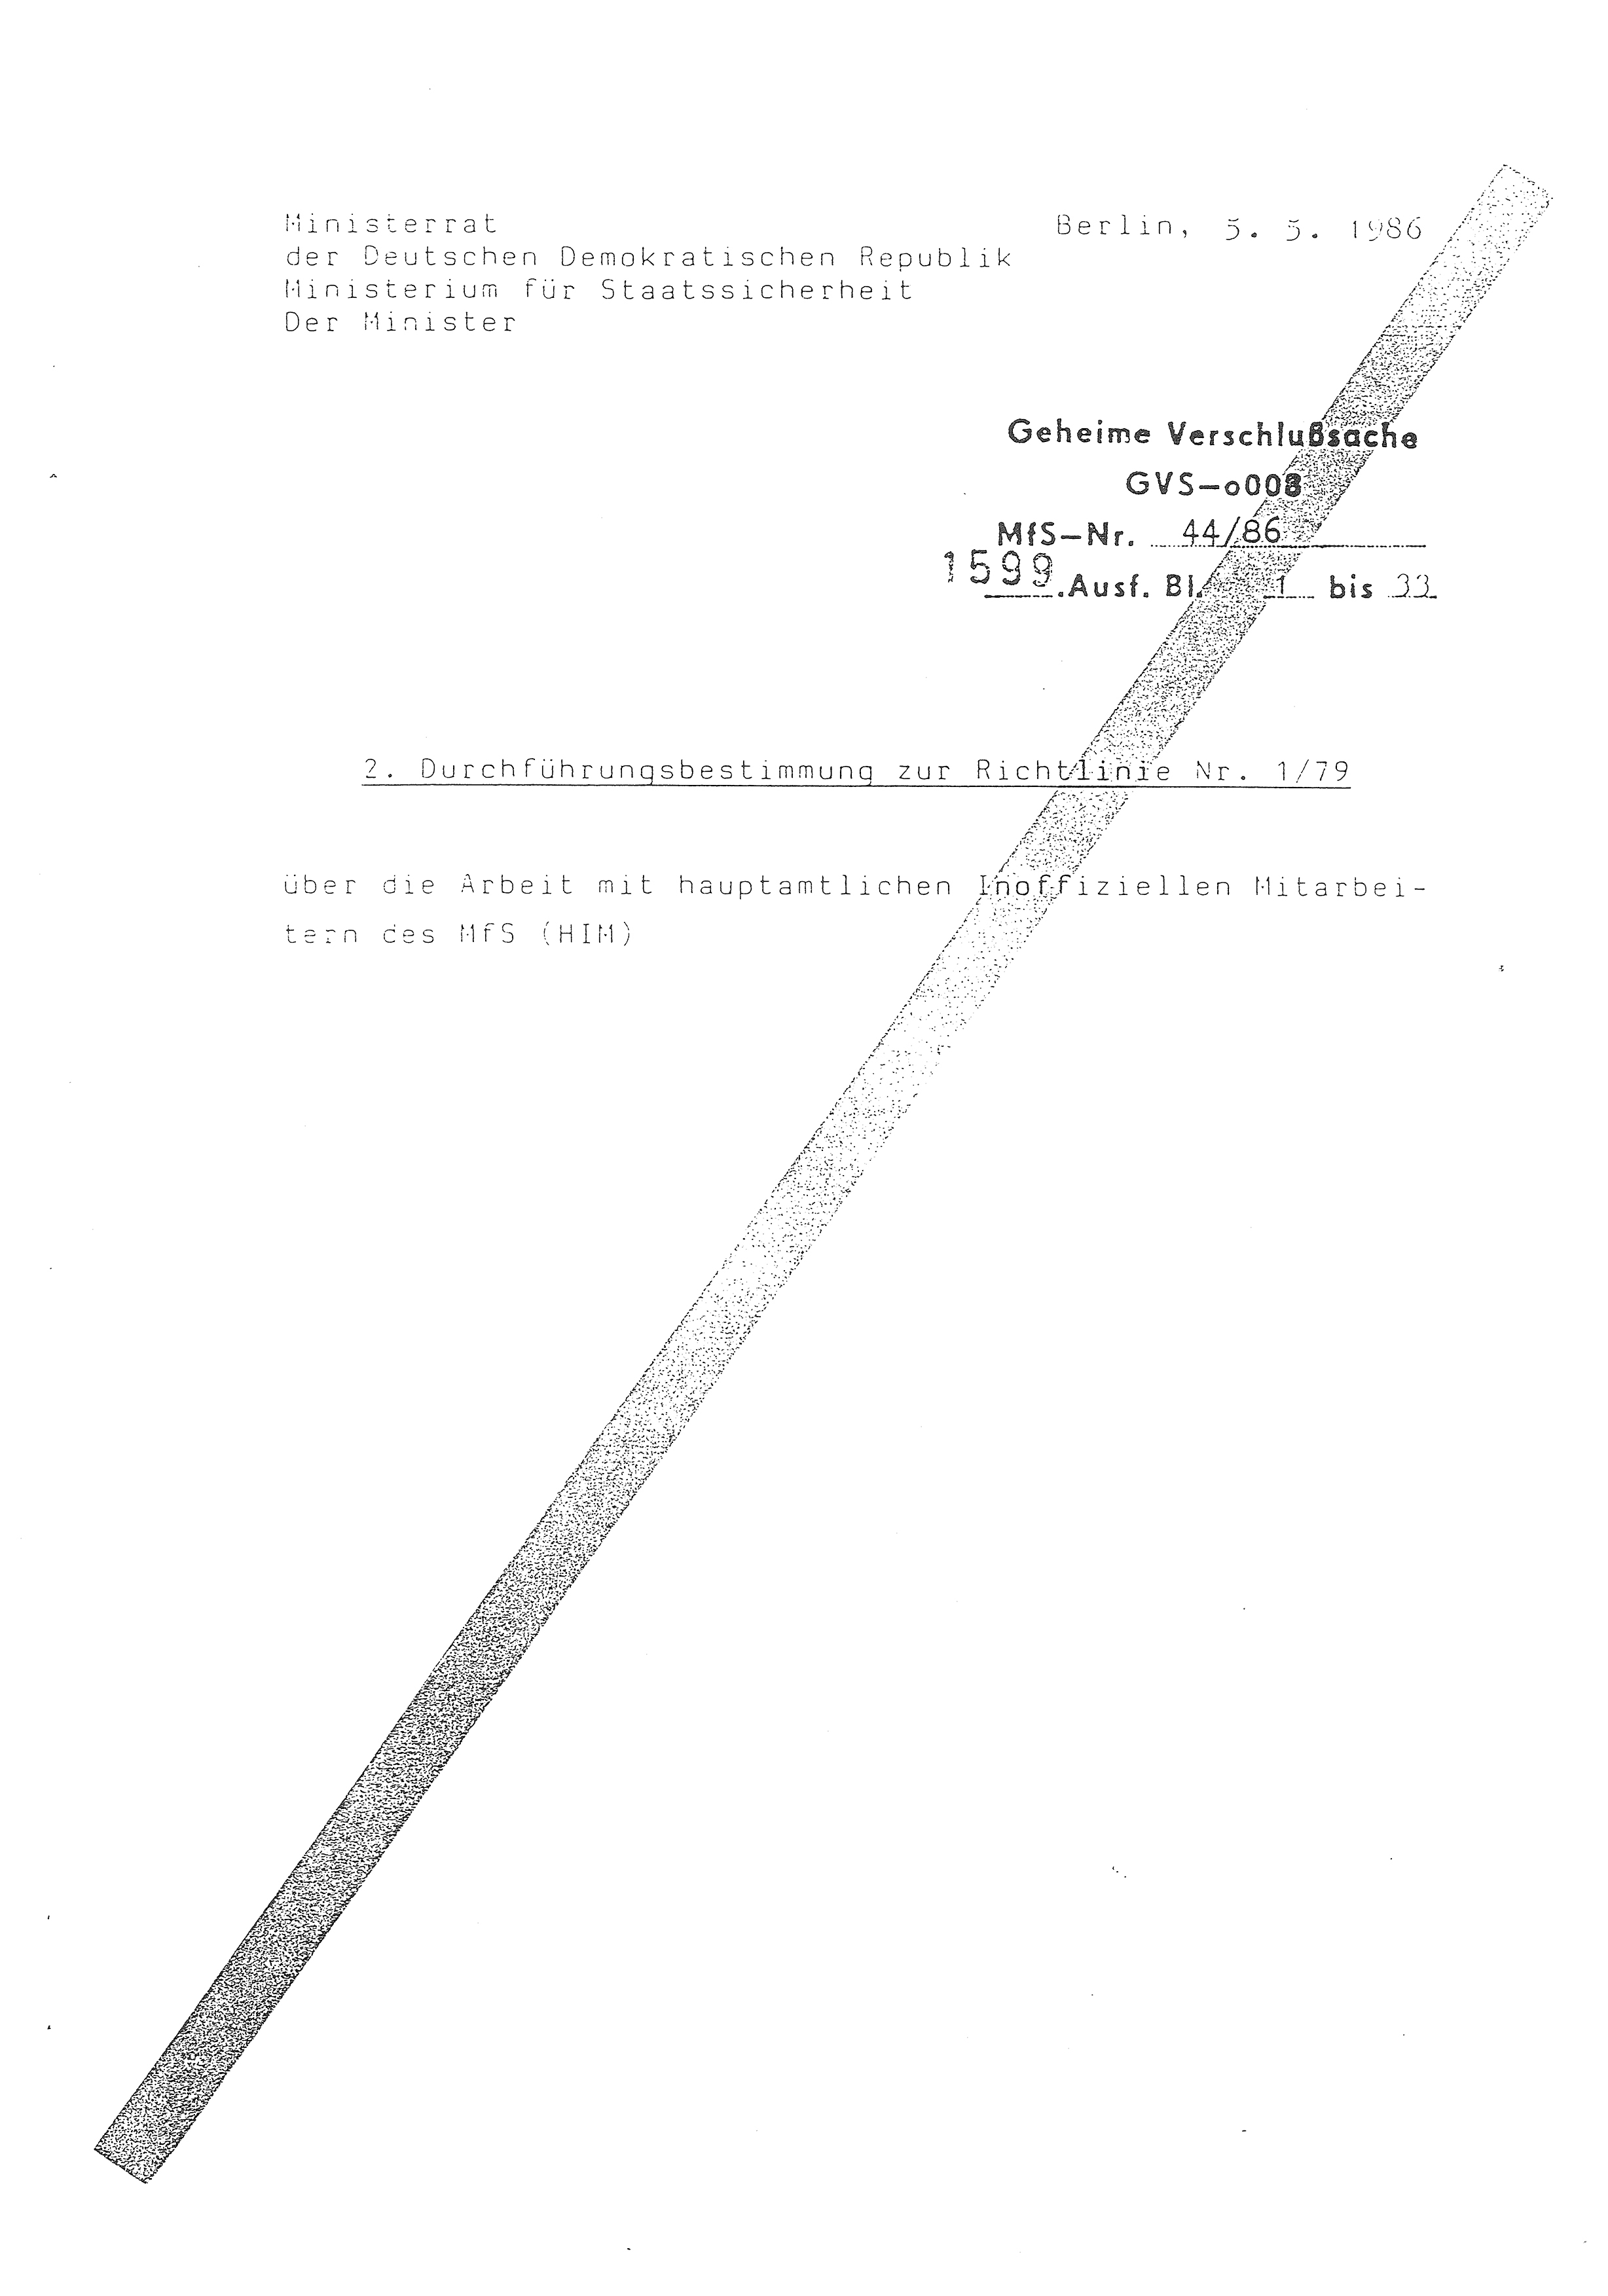 2. Durchführungsbestimmung zur Richtlinie 1/79 über die Arbeit mit hauptamtlichen Mitarbeitern des MfS (HIM), Deutsche Demokratische Republik (DDR), Ministerium für Staatssicherheit (MfS), Der Minister (Mielke), Geheime Verschlußsache (GVS) ooo8-44/86, Berlin 1986, Seite 2 (2. DB RL 1/79 DDR MfS Min. GVS ooo8-44/86 1986, S. 2)